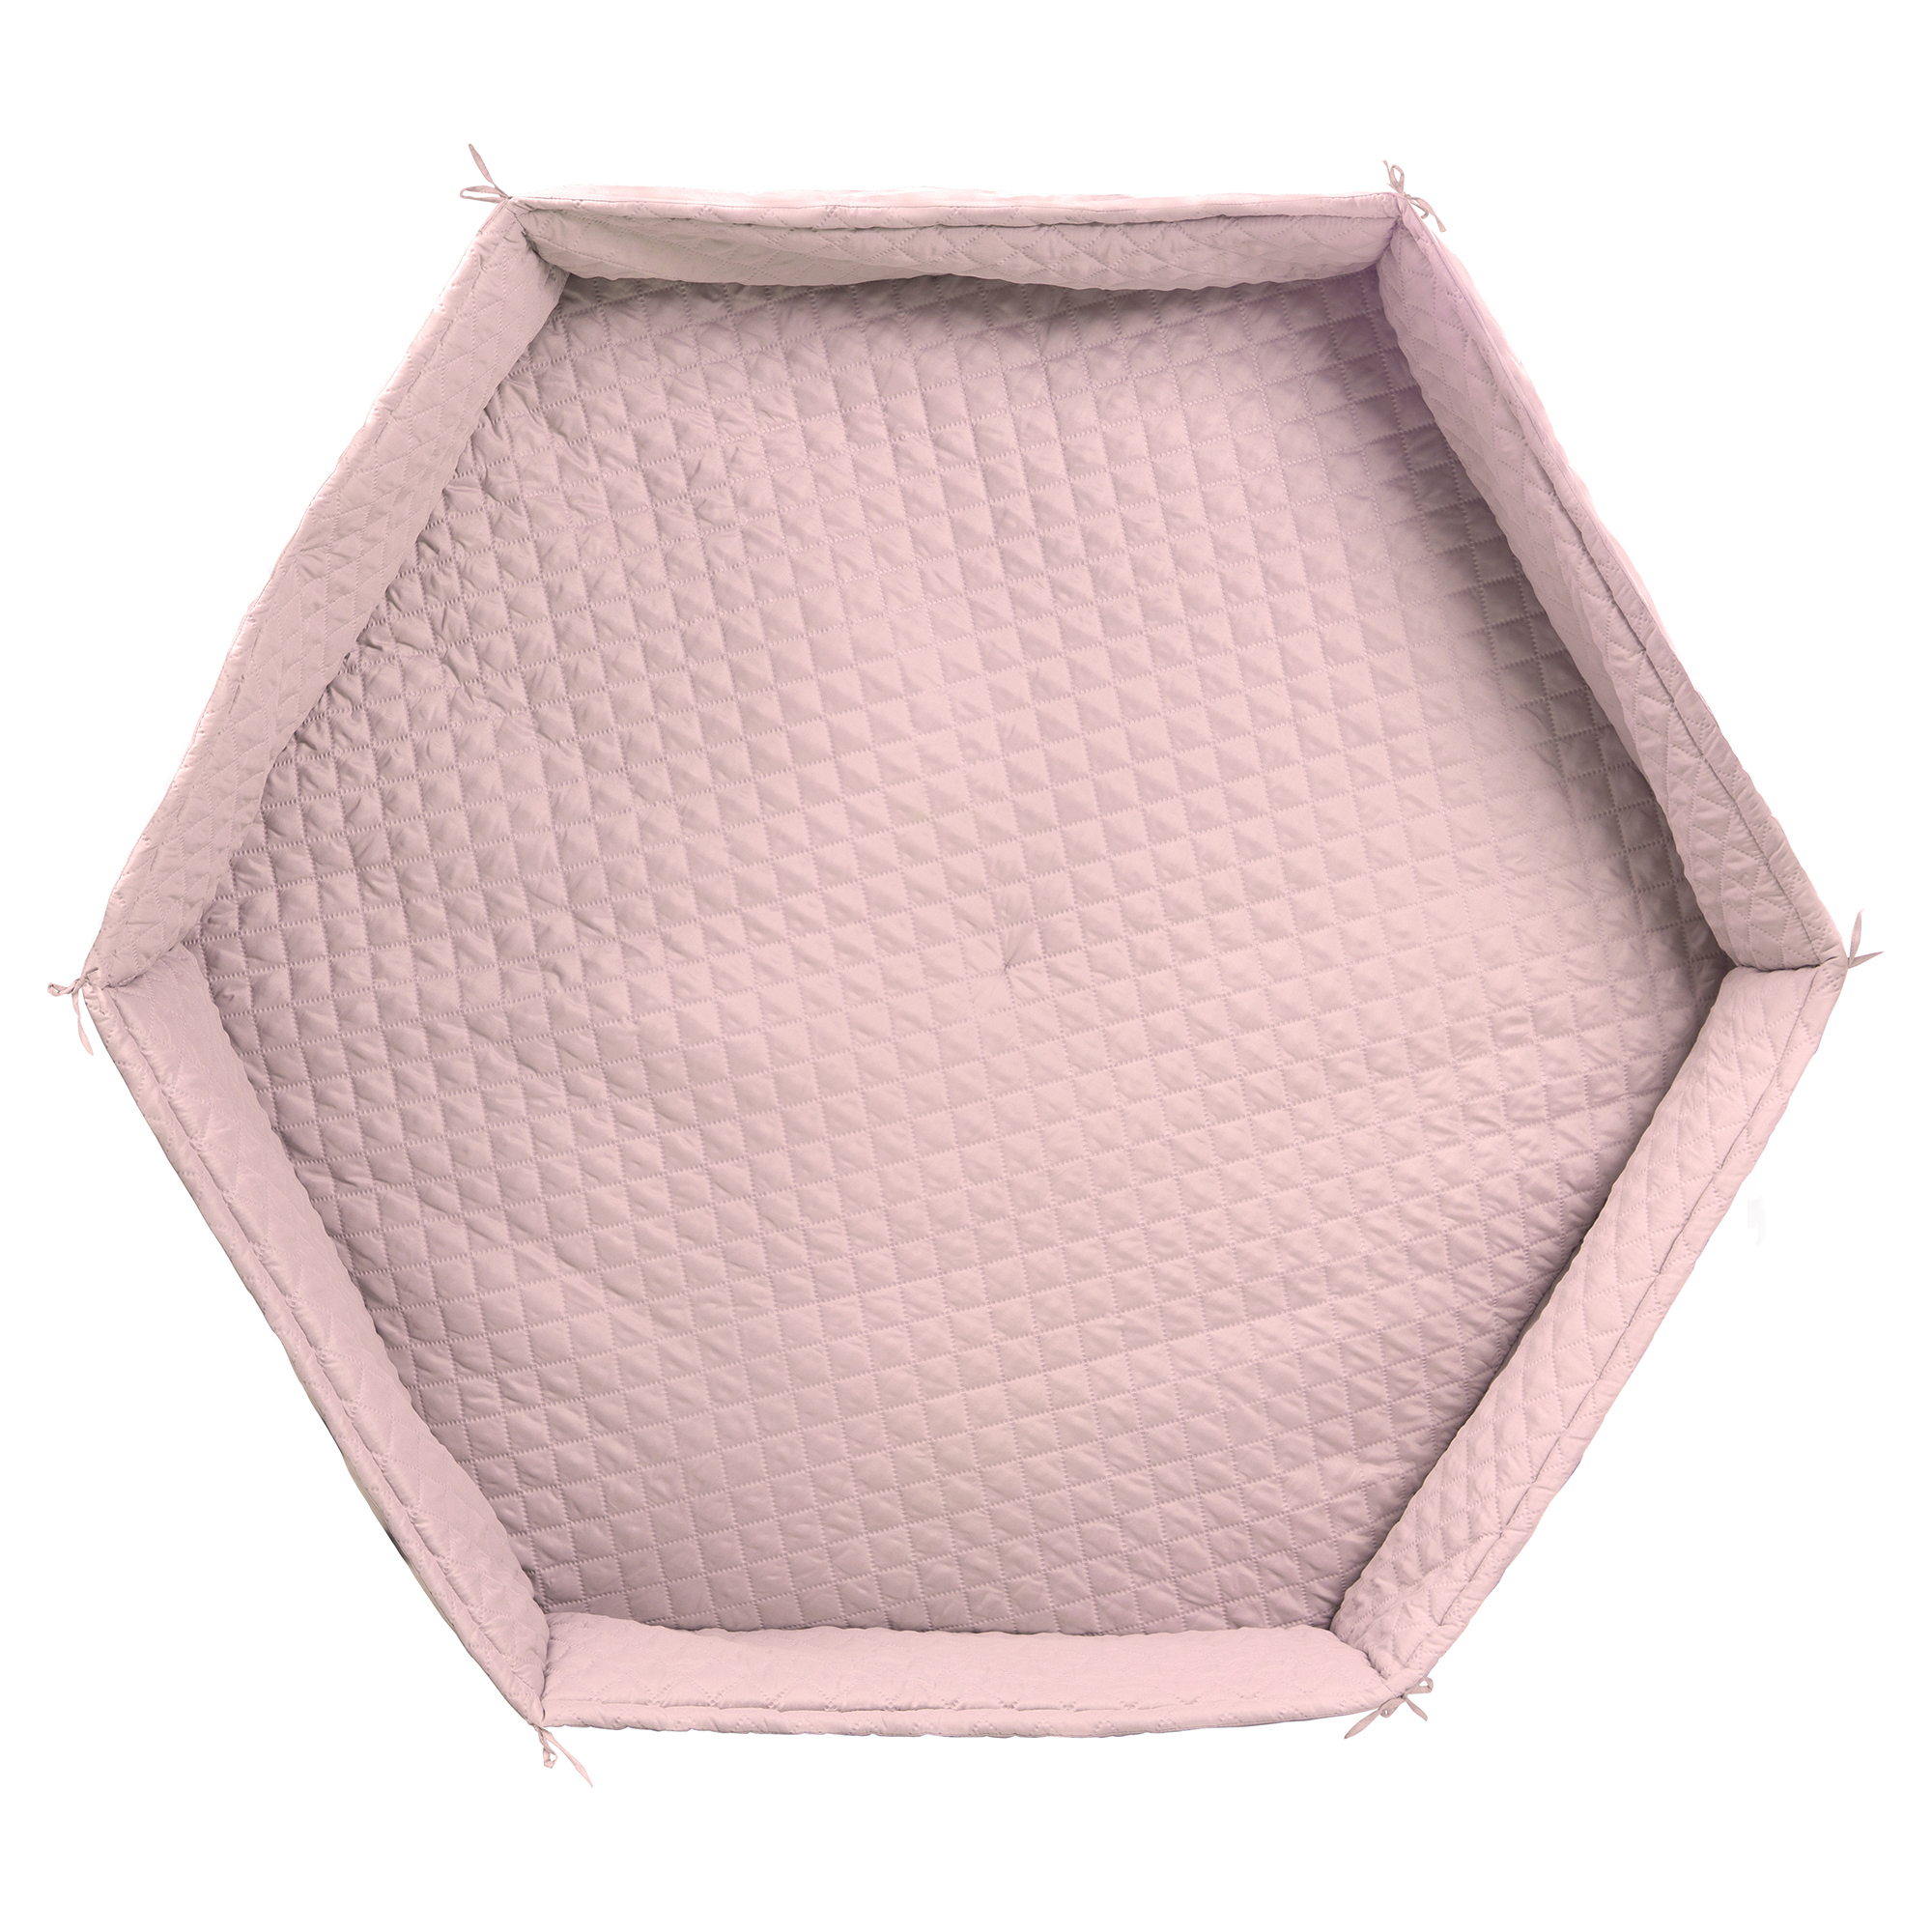 Tapis de parc roba Style hexagonal ROSE Roba